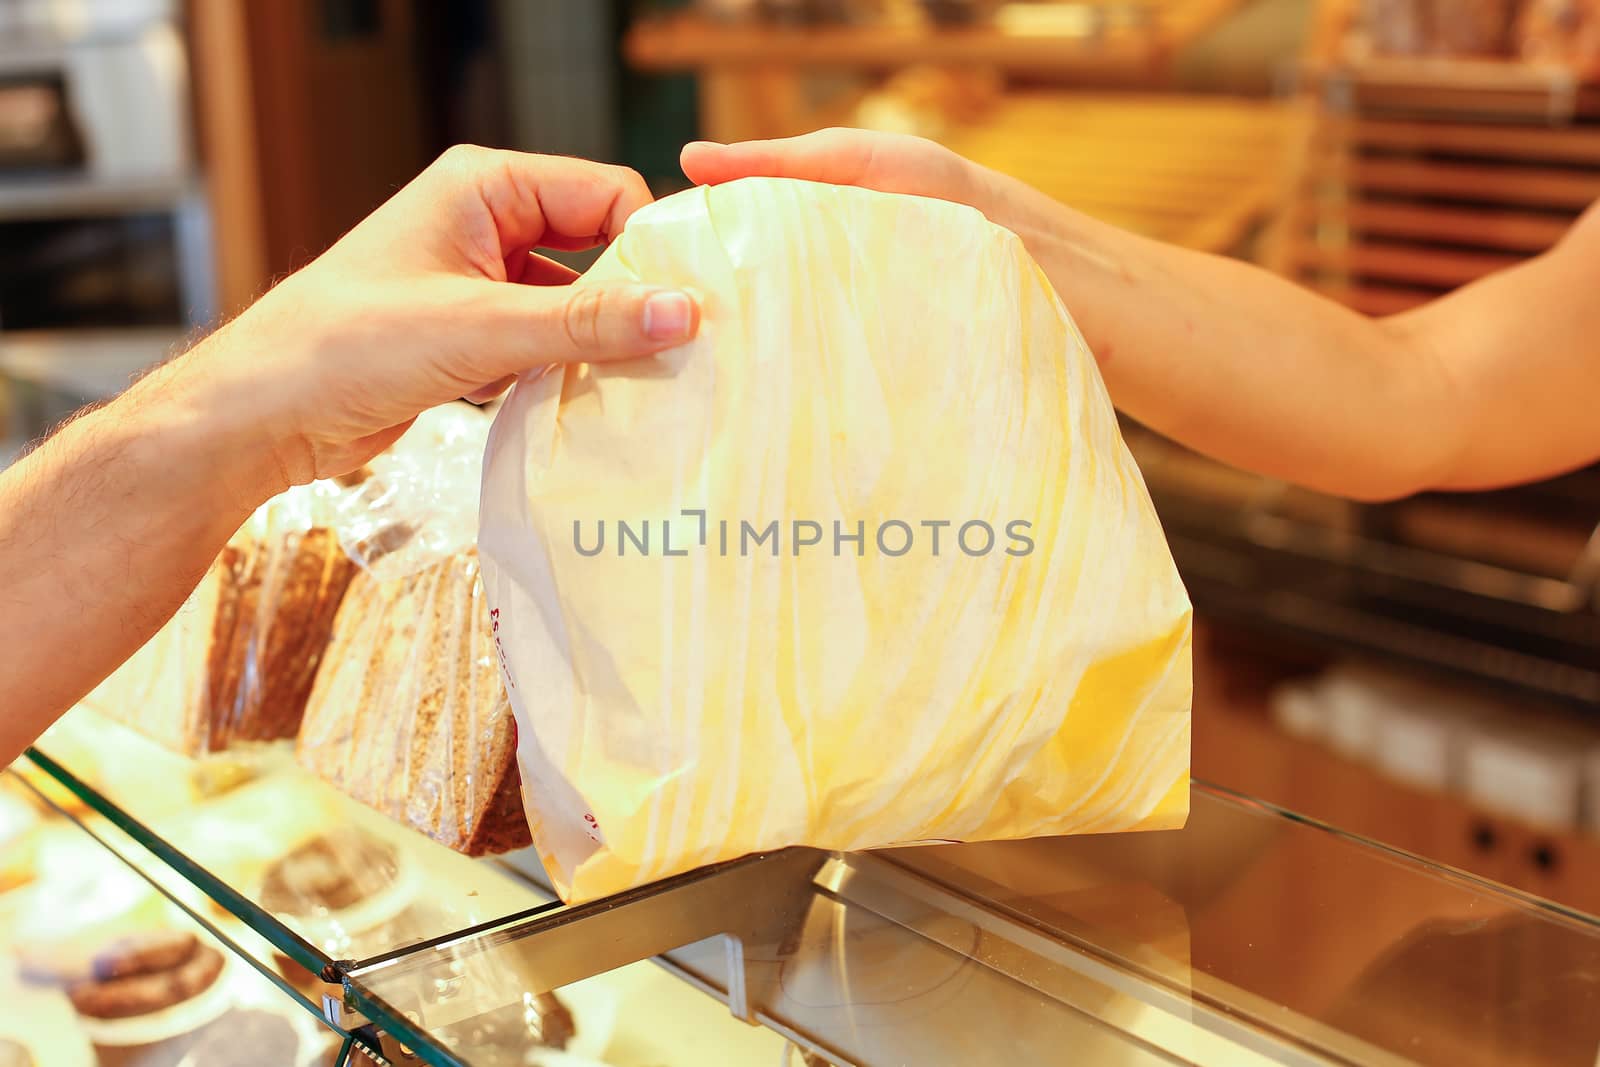 Baker's shop shopkeeper gives bread to customer by ikonoklast_fotografie